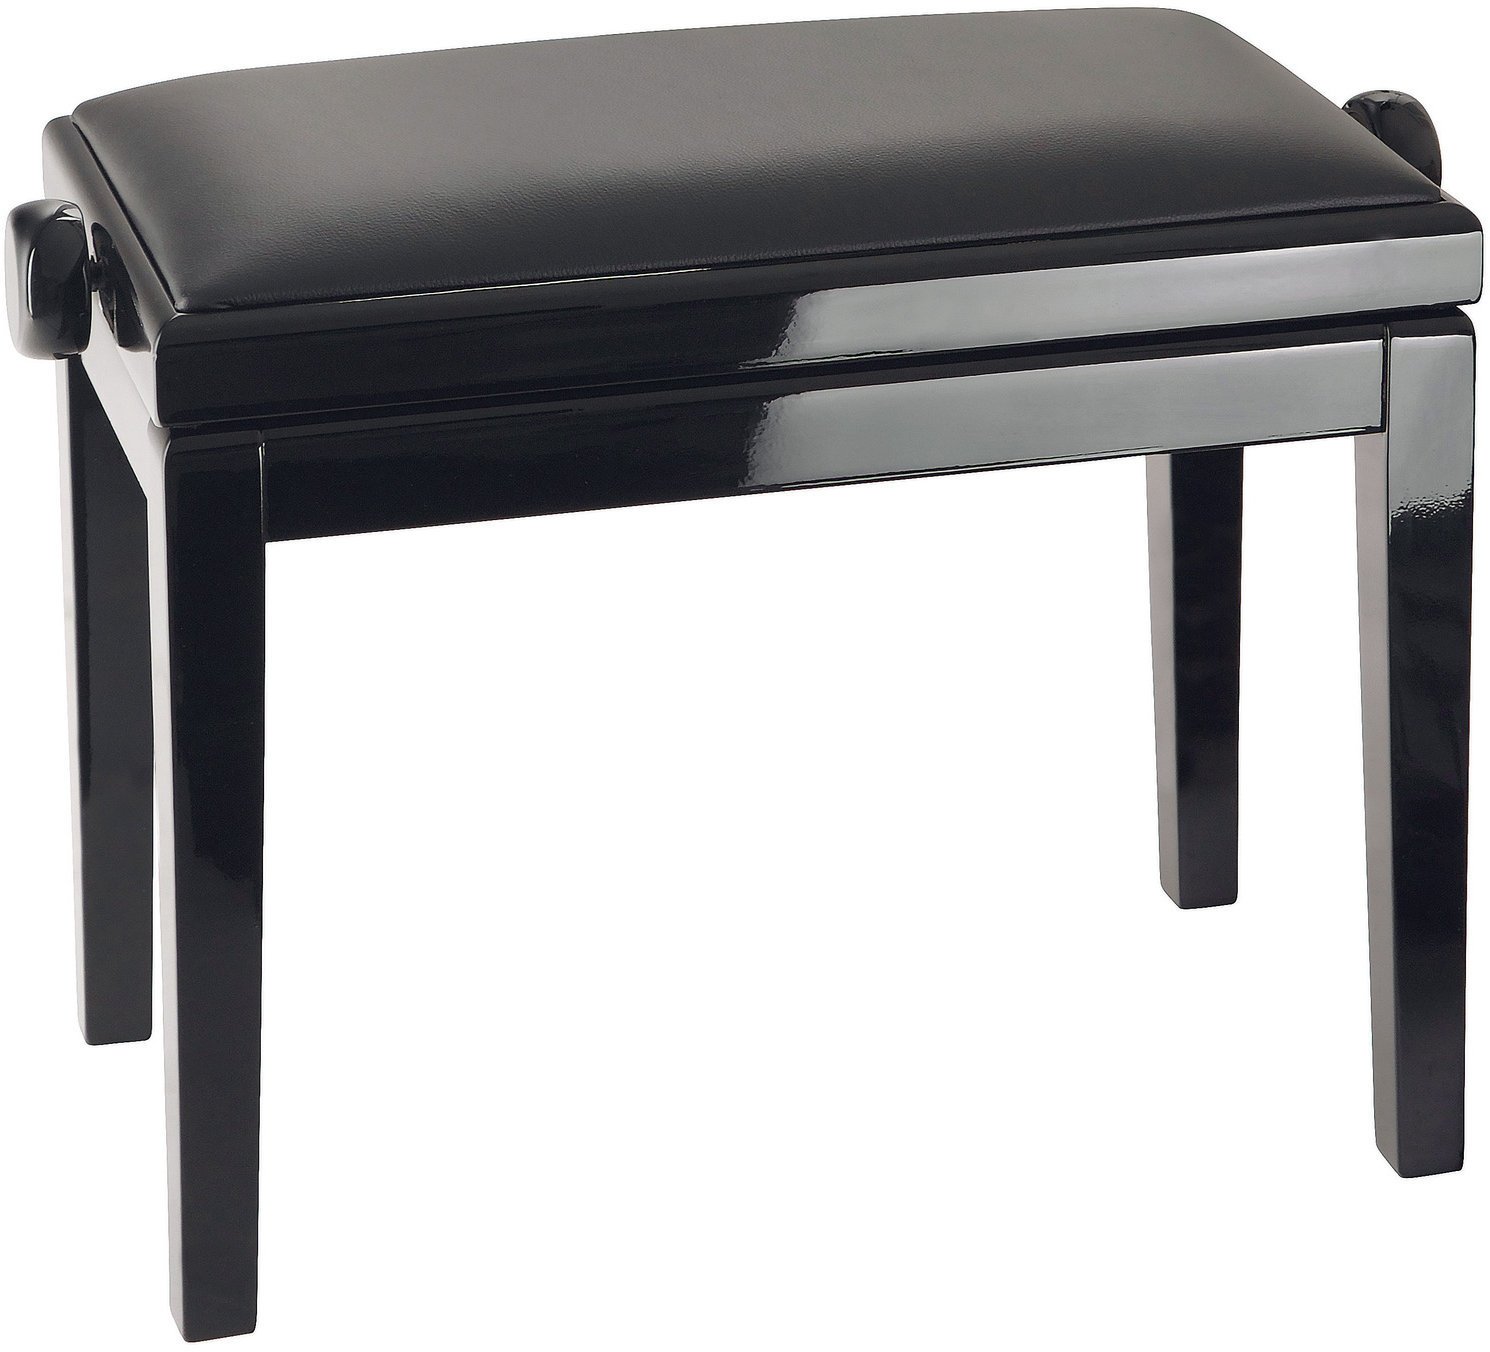 Drvene ili klasične klavirske stolice
 Konig & Meyer 13990 Black High Polish